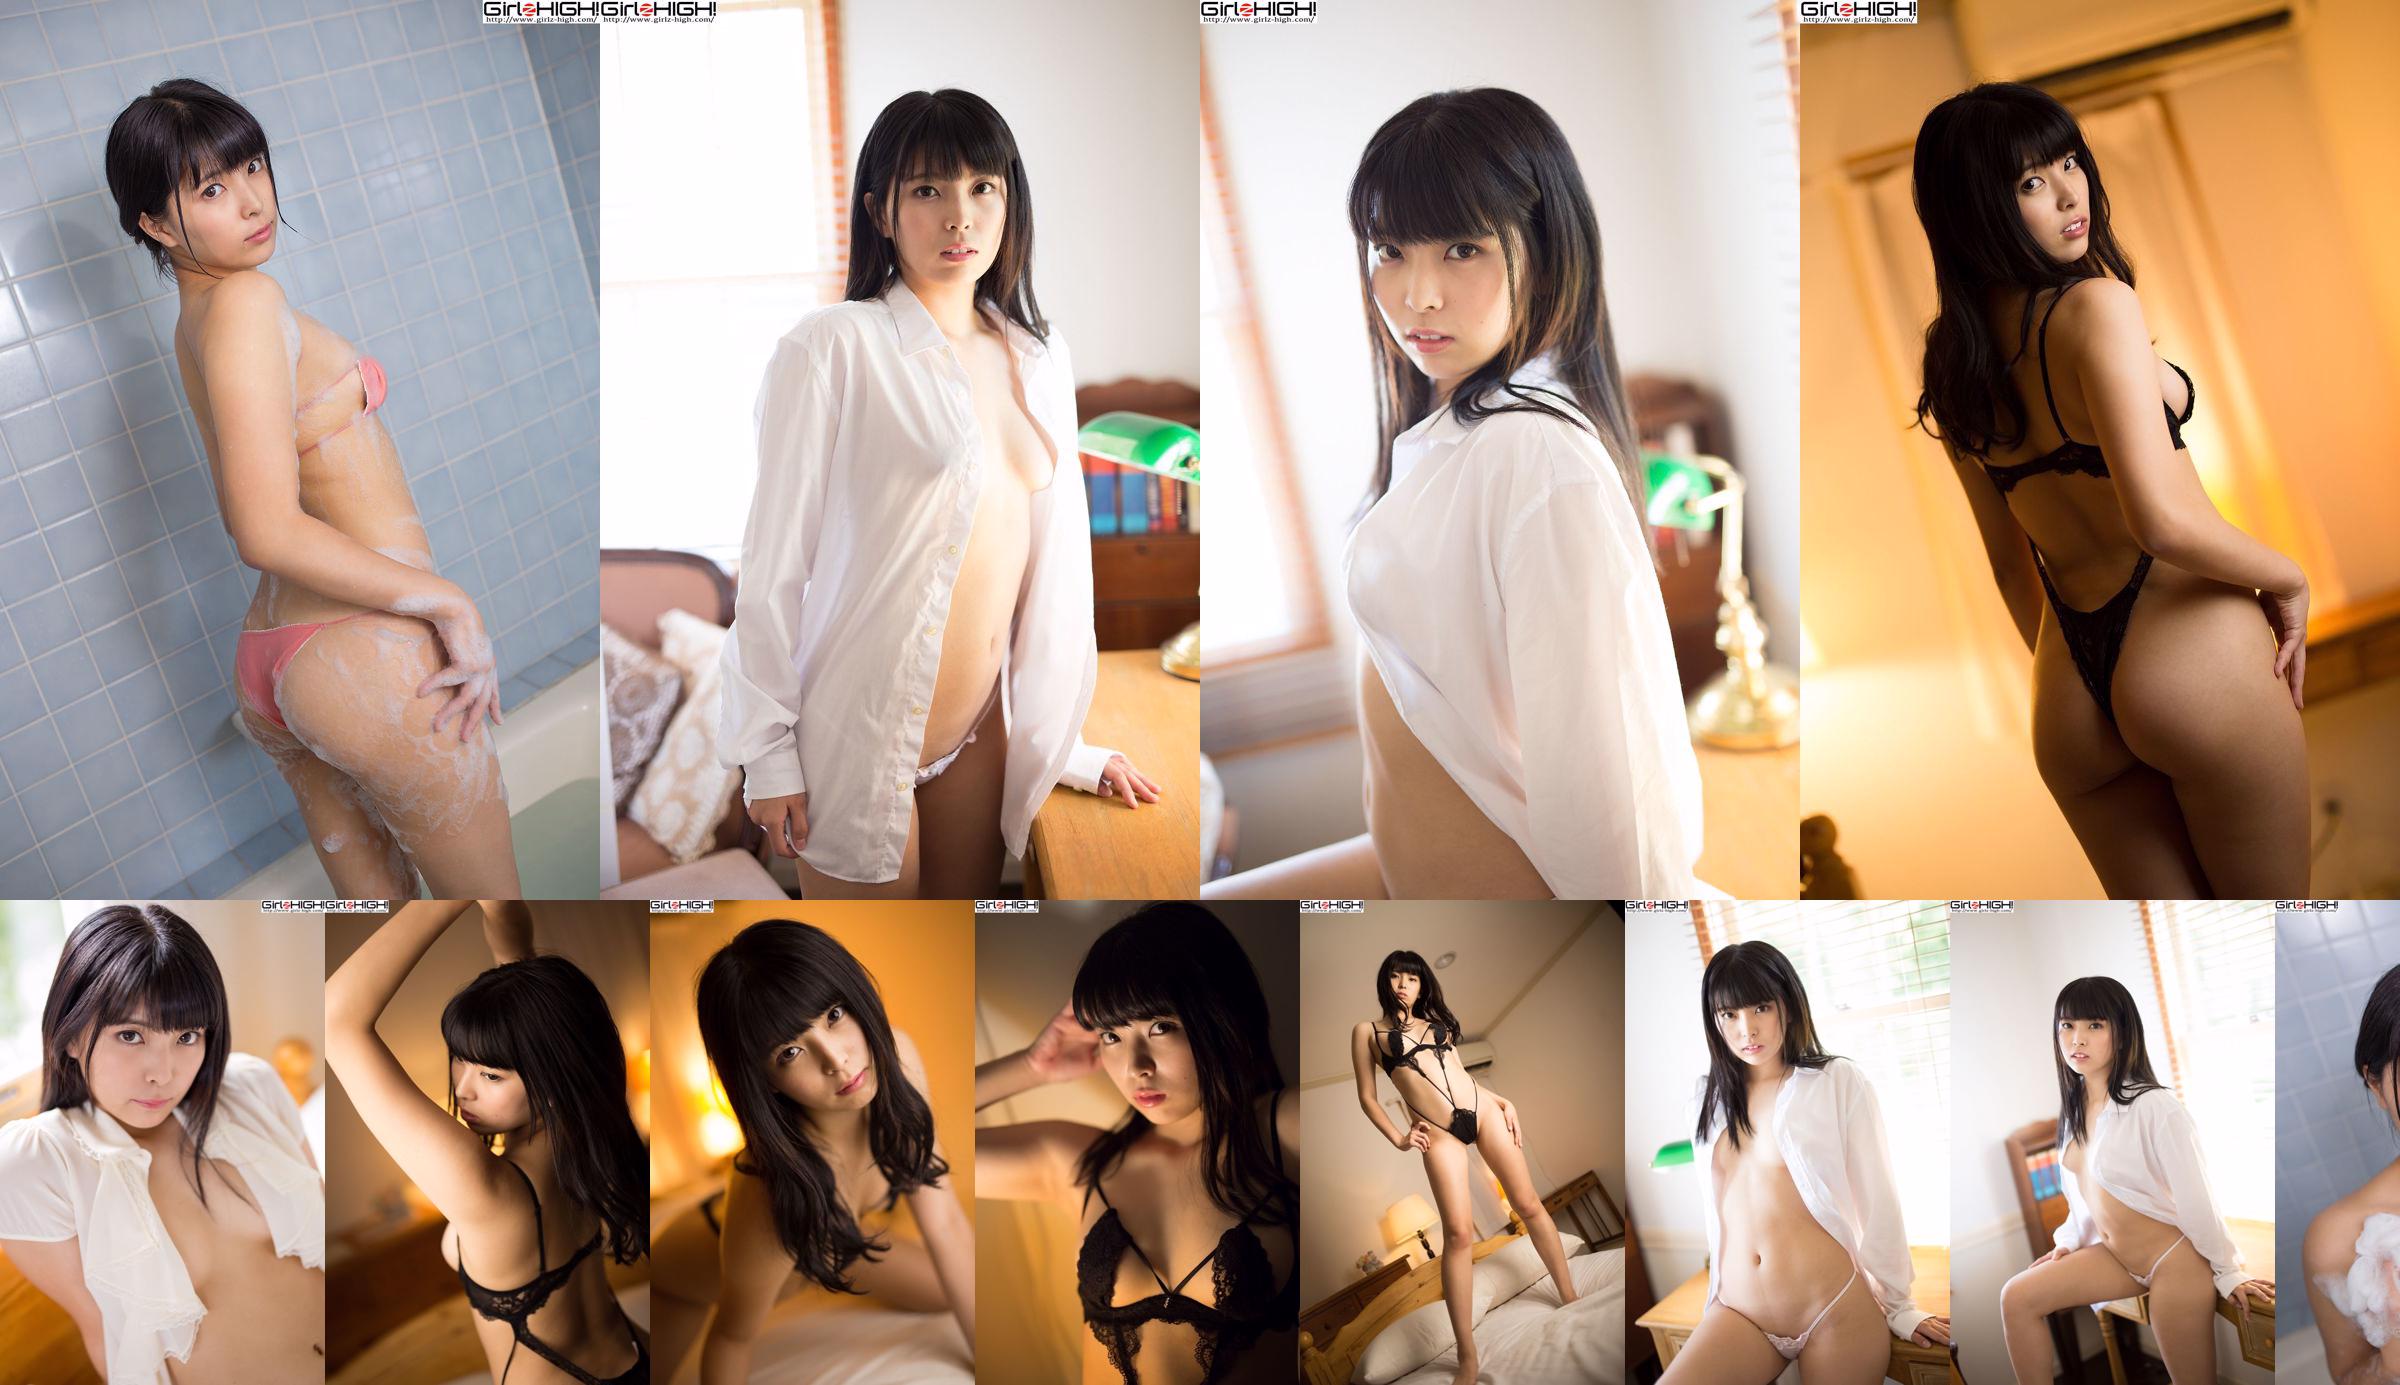 Miharu Mochizuki "Nice to meet you" Y-shirt [Girlz-High] No.b047d6 Page 1